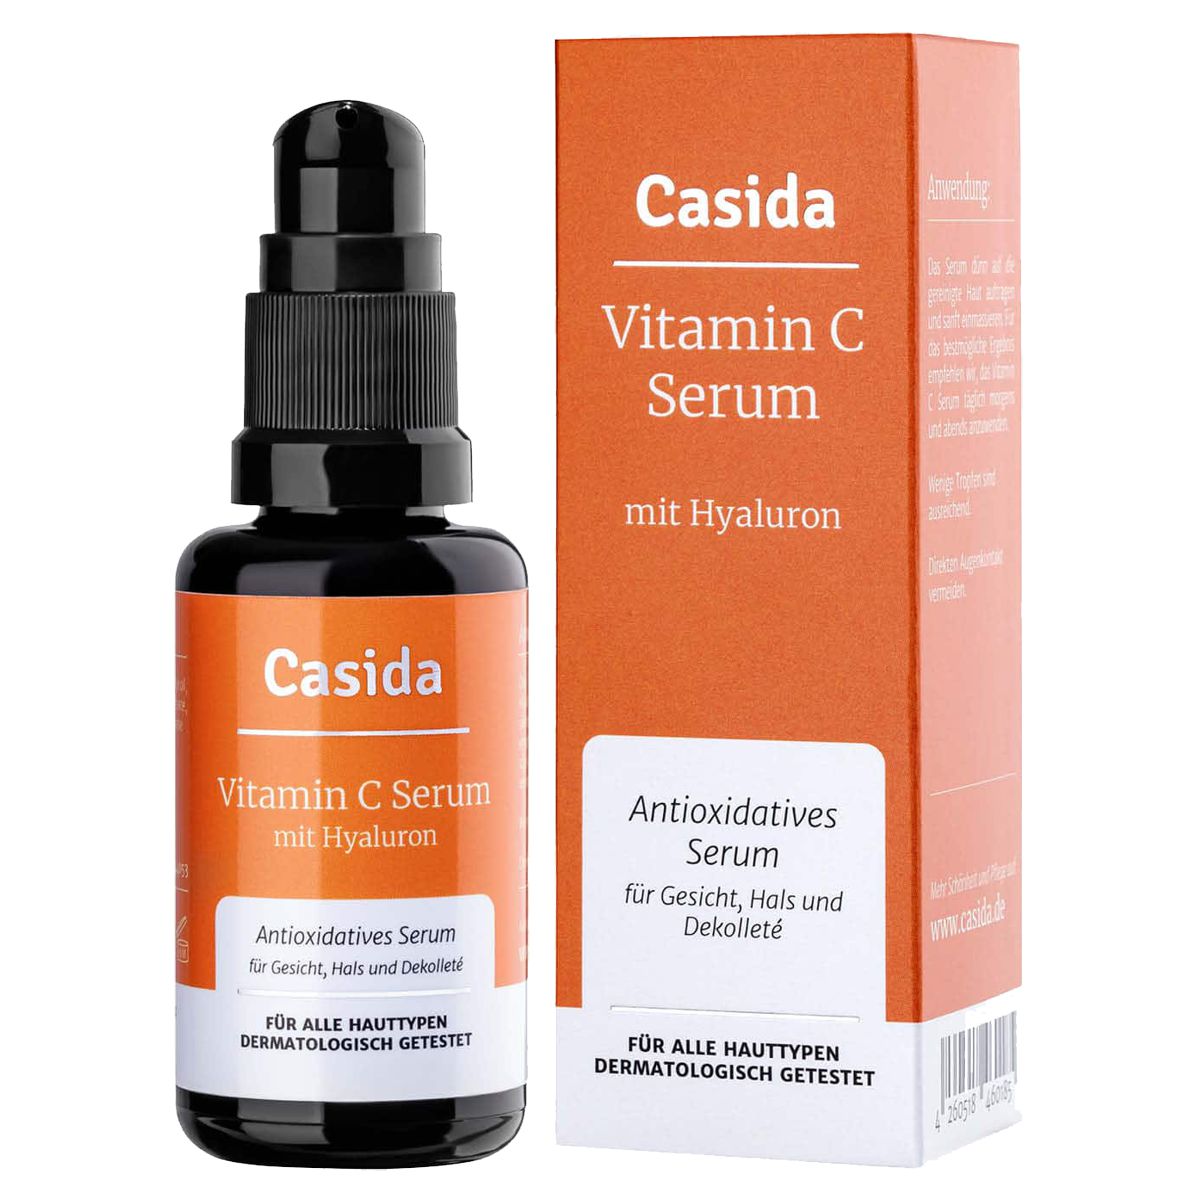 Casida Vitamin C Serum mit Hyaluron Dispenser 30 ml